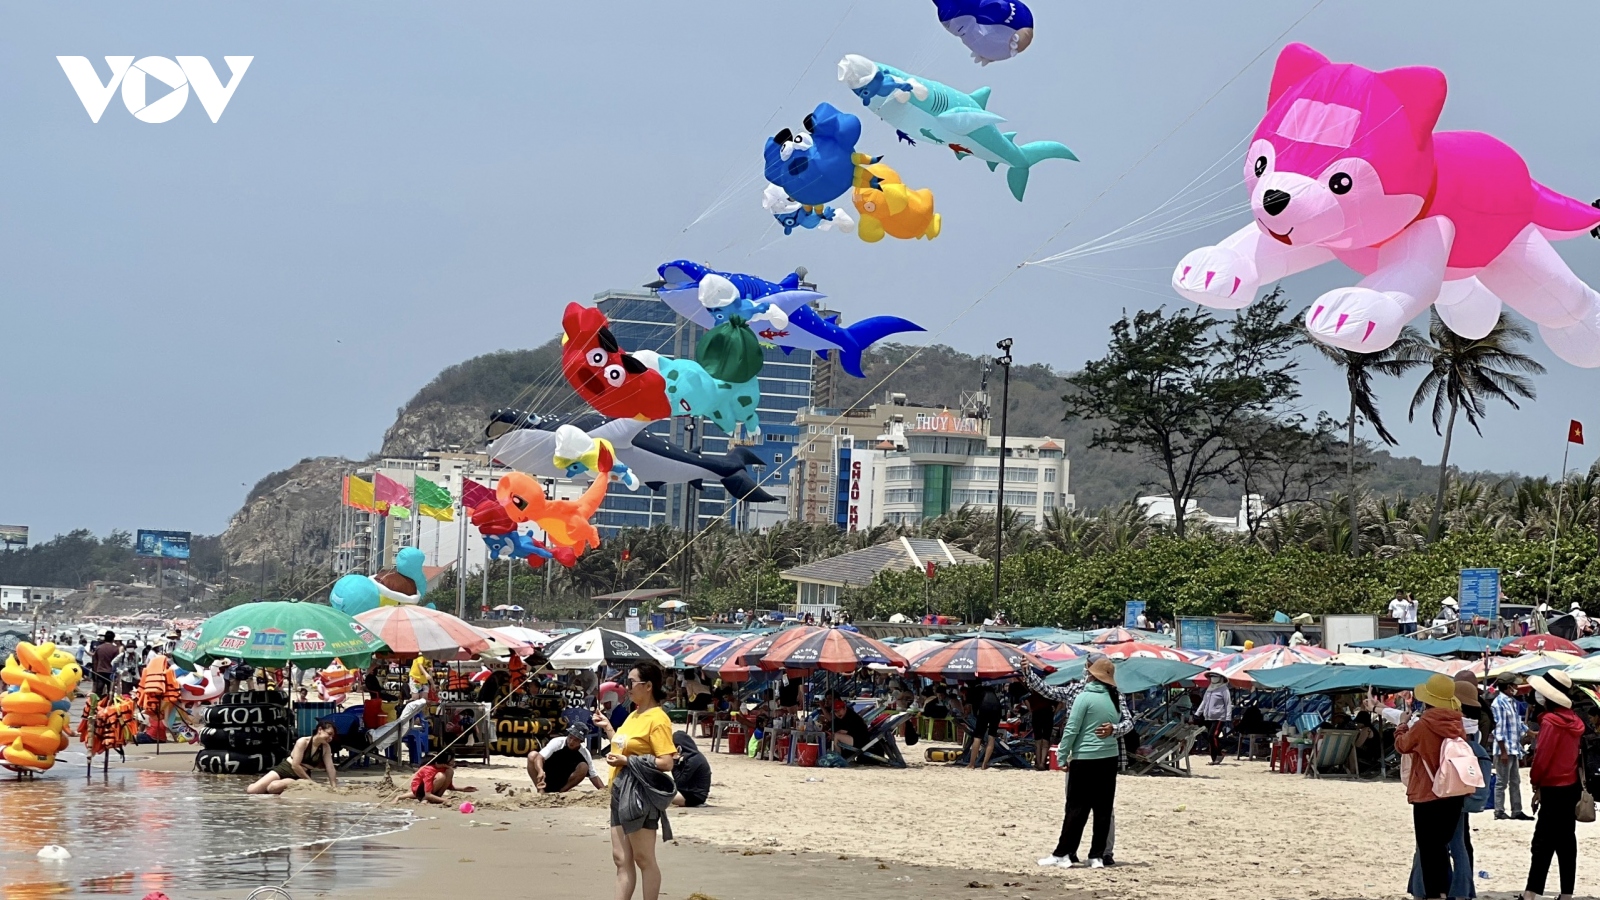 Âm nhạc biển là điểm nhấn du lịch hè 2023 ở Bà Rịa – Vũng Tàu